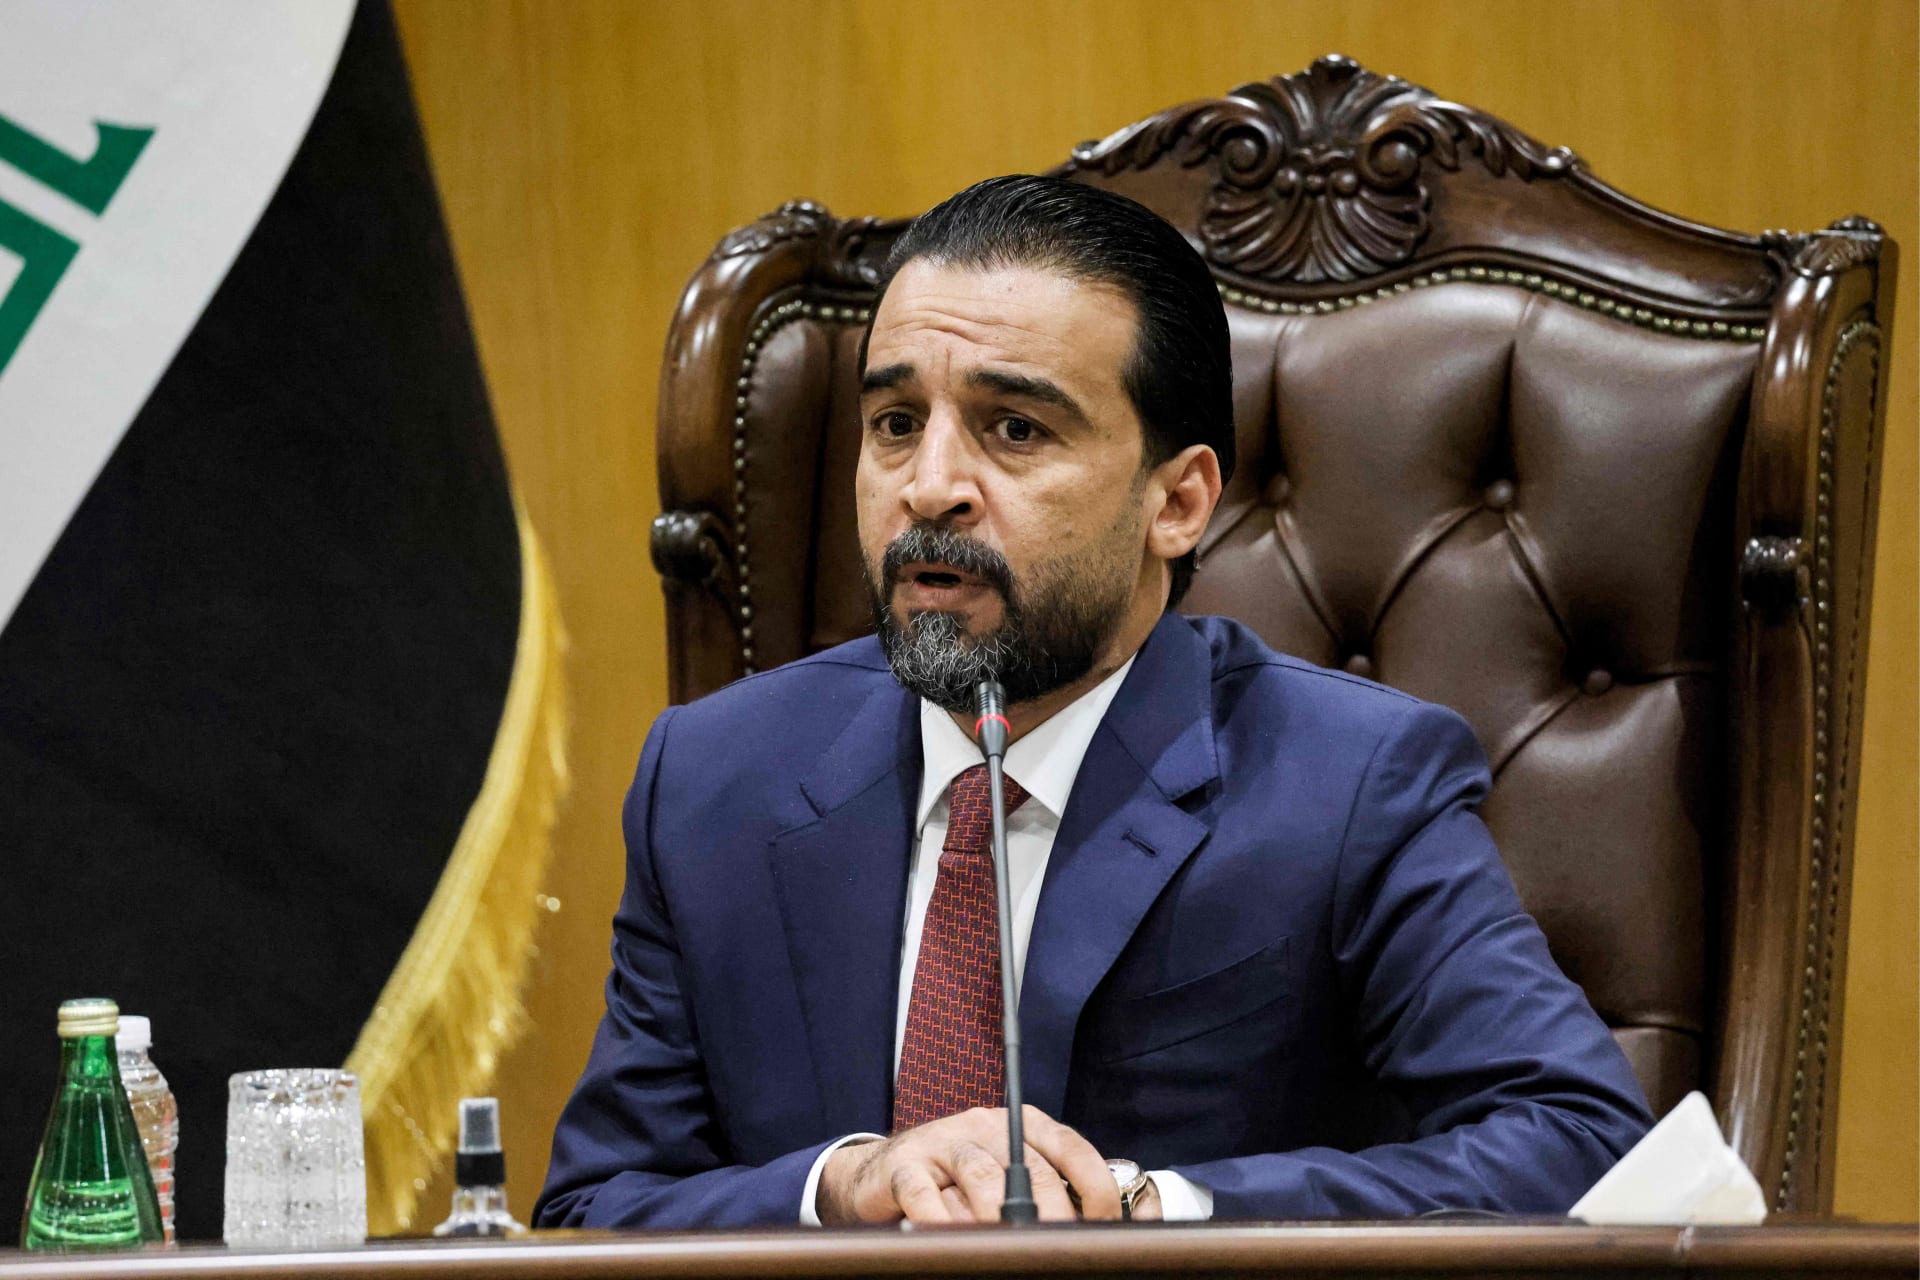 المحكمة الاتحادية العراقية تعلن إنهاء عضوية رئيس مجلس النواب والنائب ليث الدليمي